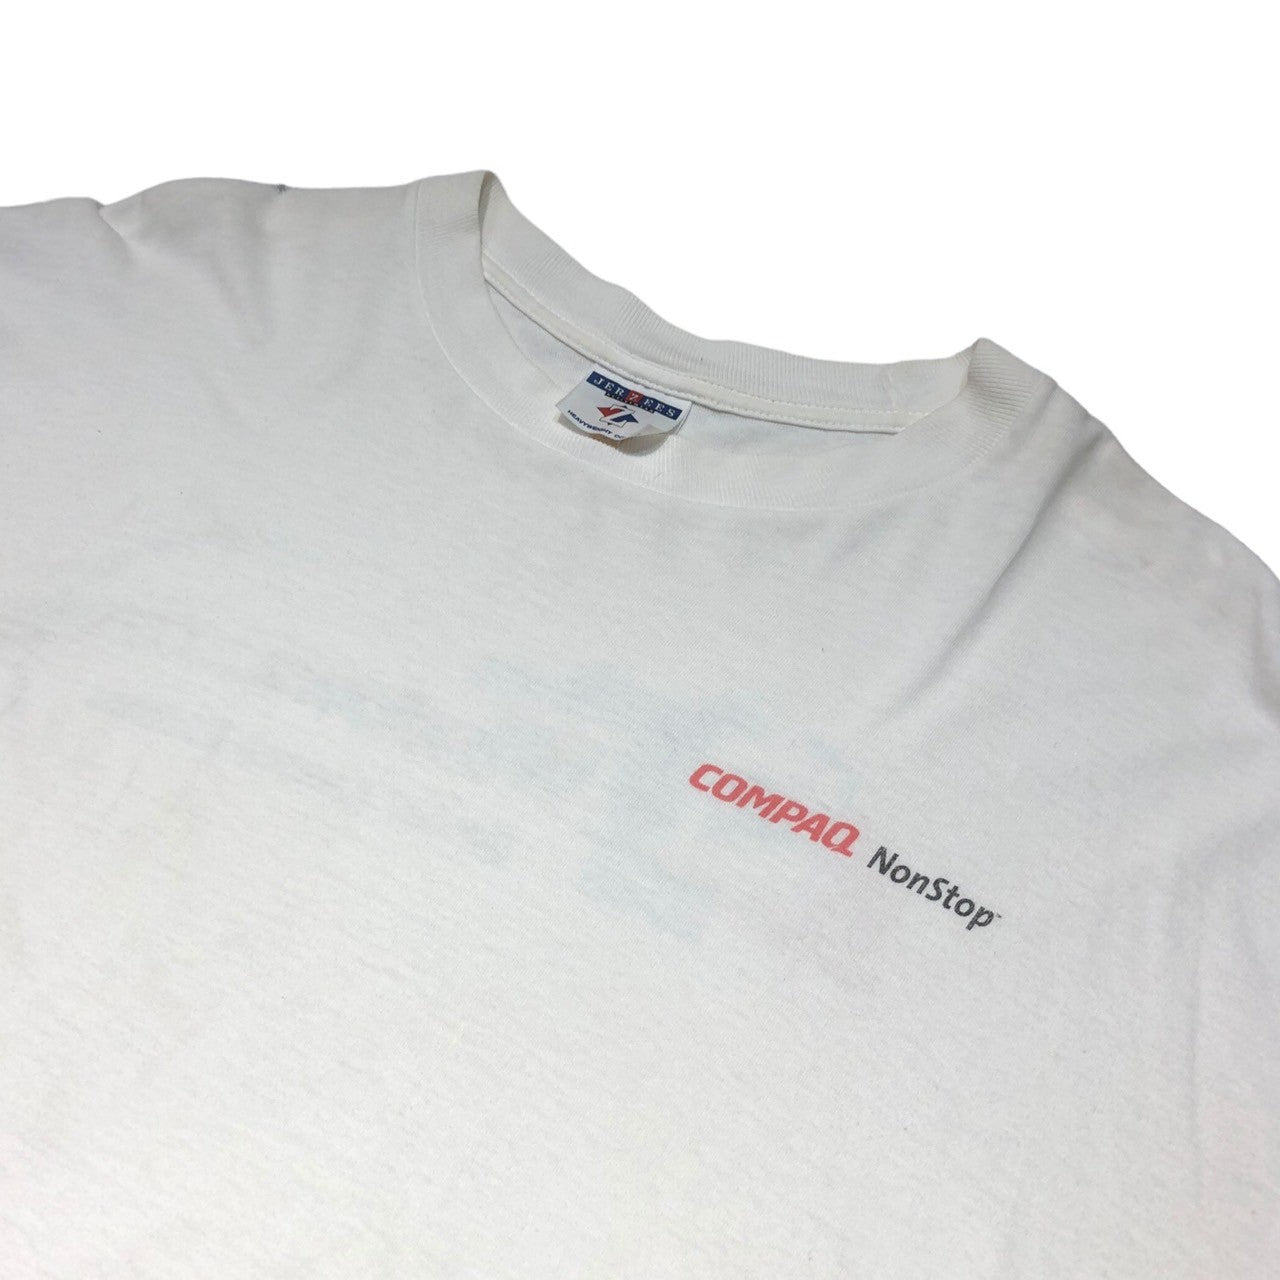 JERZEES(ジャージーズ) 00's ”Windows 2000”  corporate t-shirts 企業 ロゴ Tシャツ L ホワイト Microsoft マイクロソフト COMPAQ NonStop